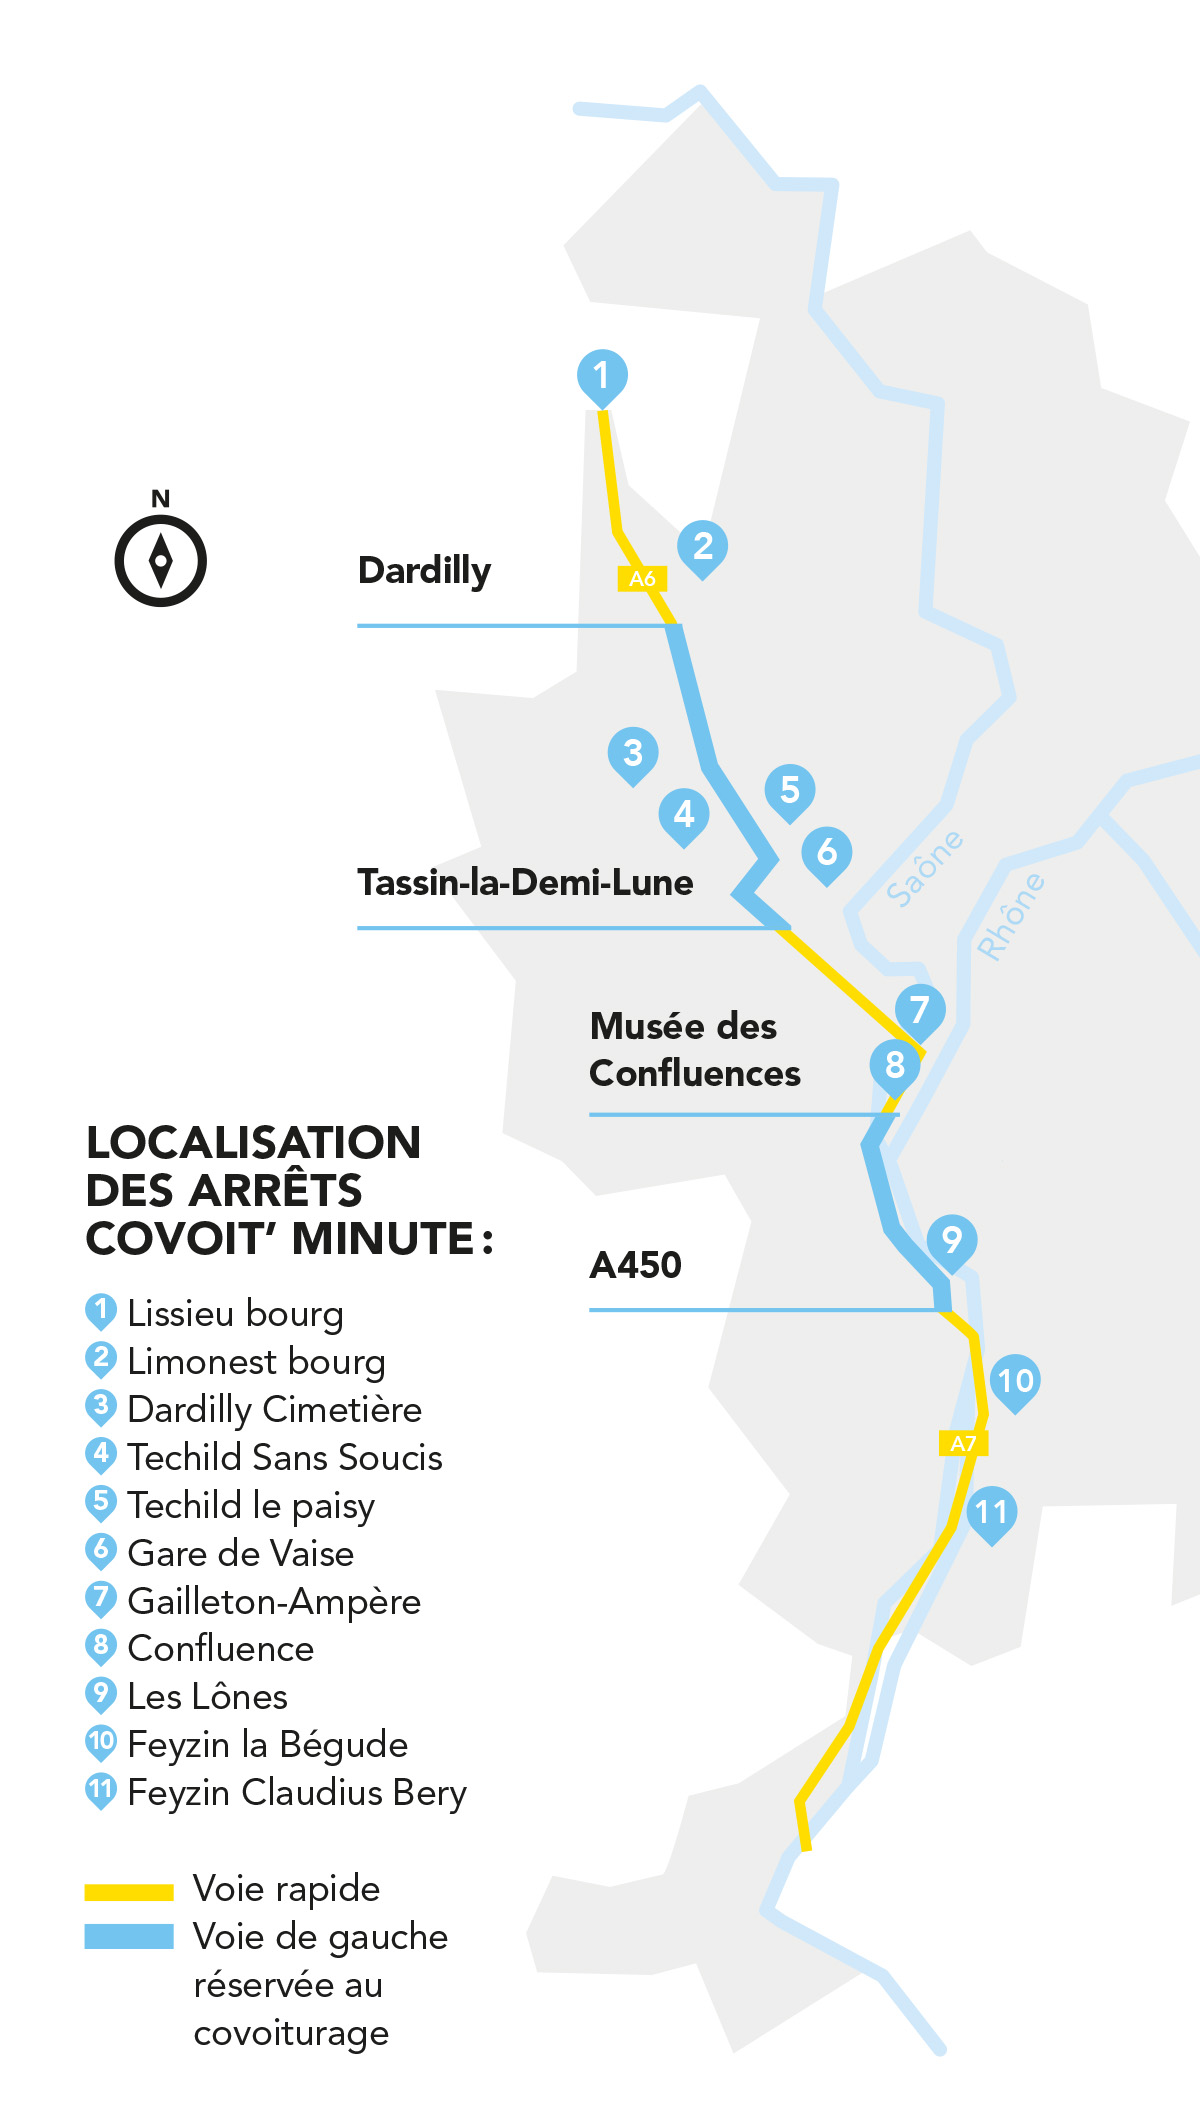 Carte des arrêts covoit' minute dans la Métropole de Lyon